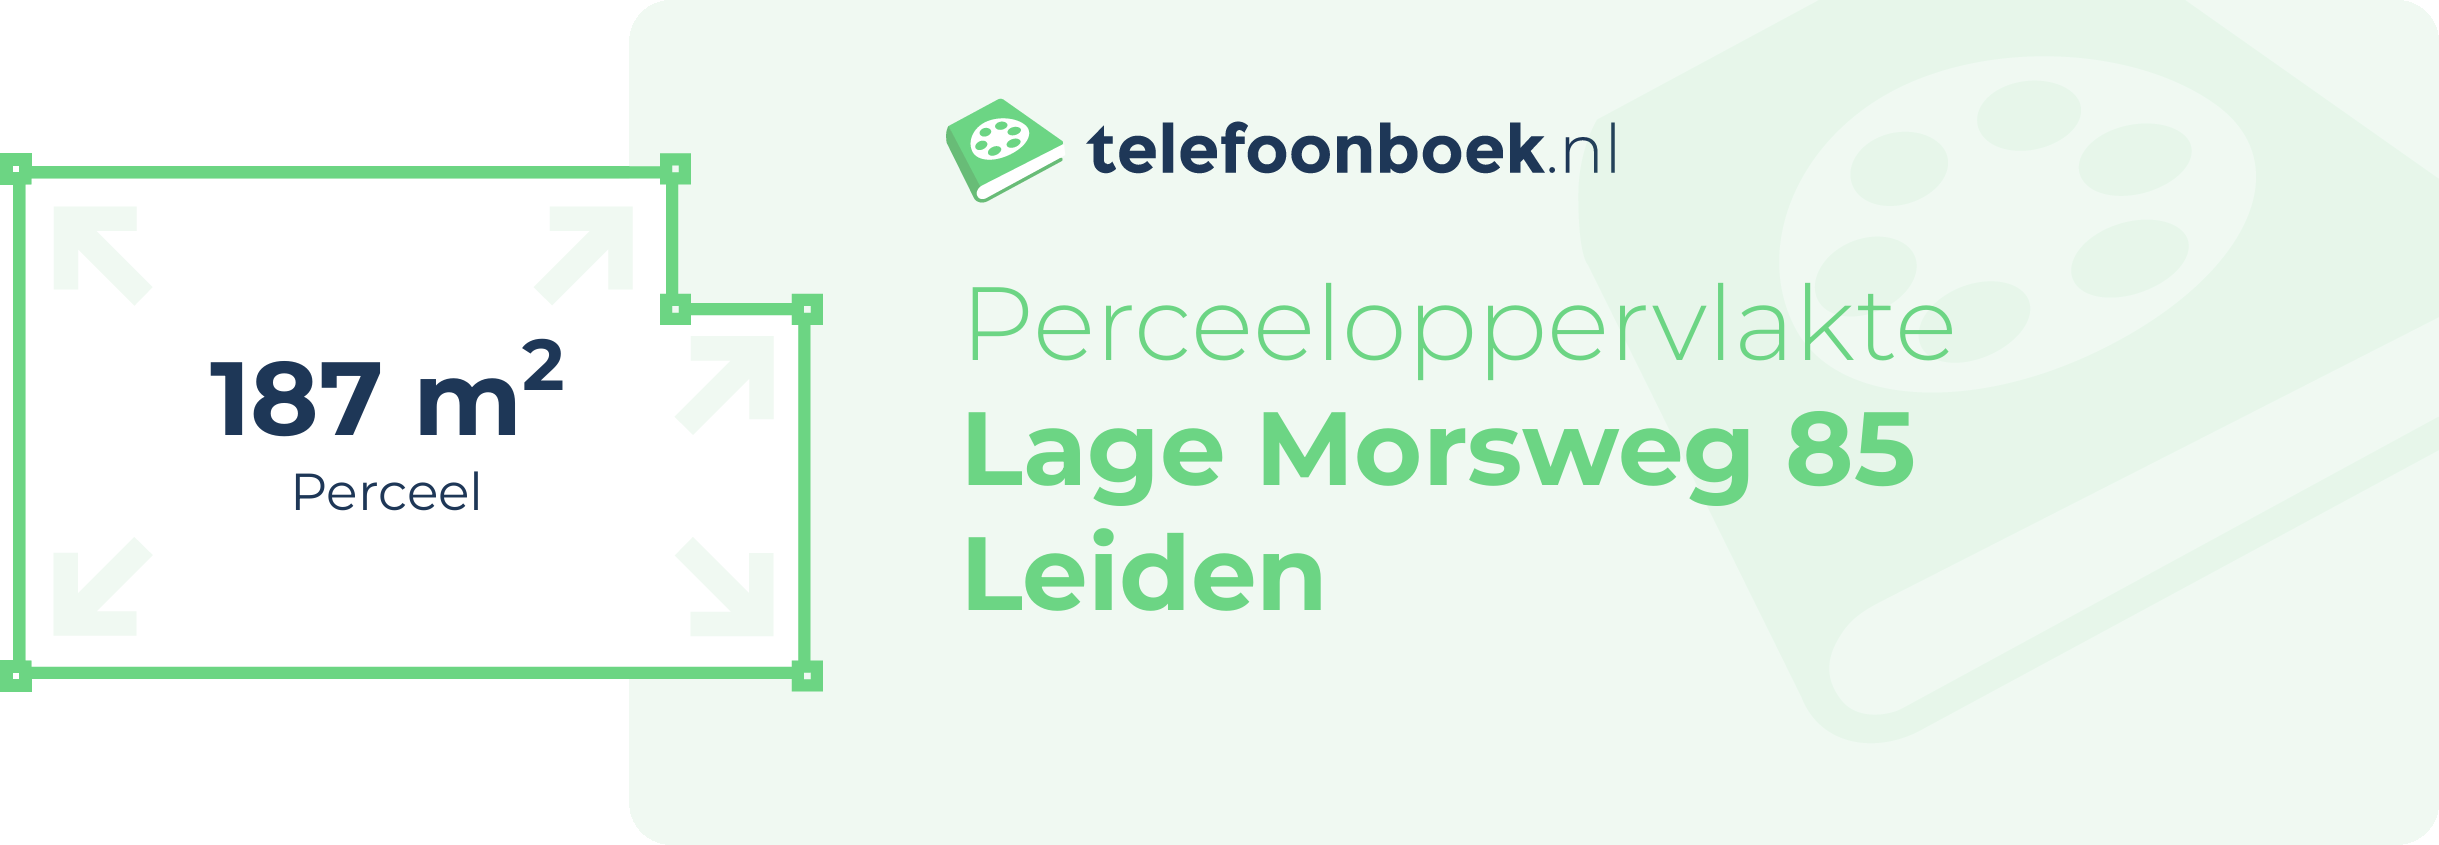 Perceeloppervlakte Lage Morsweg 85 Leiden